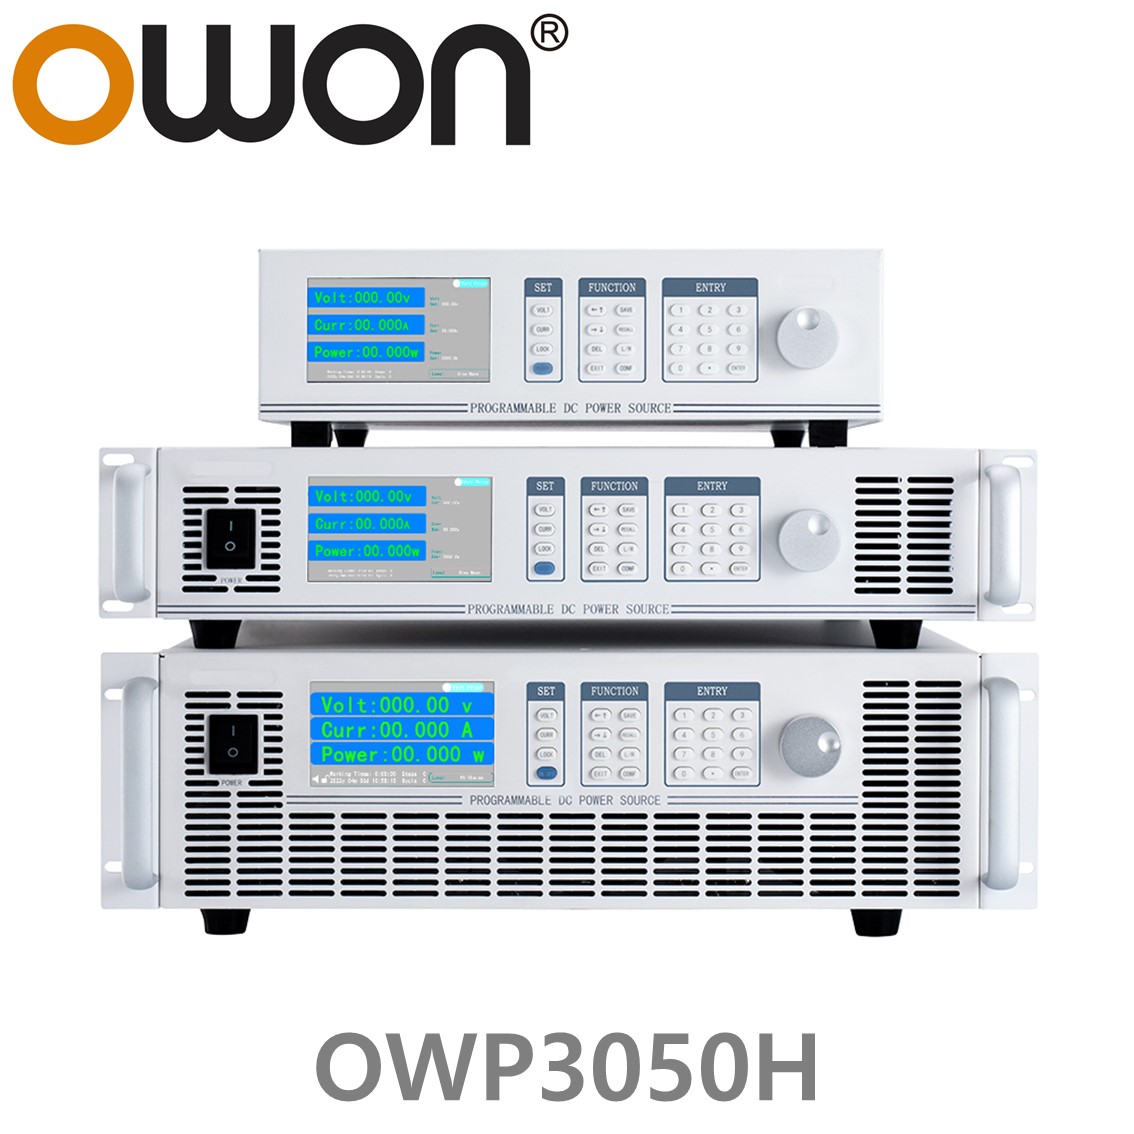 [ OWON ] OWP3050H 고전력 DC파워서플라이, 0-500.00V / 0-9.0000A / 3000.0W DC전원공급장치